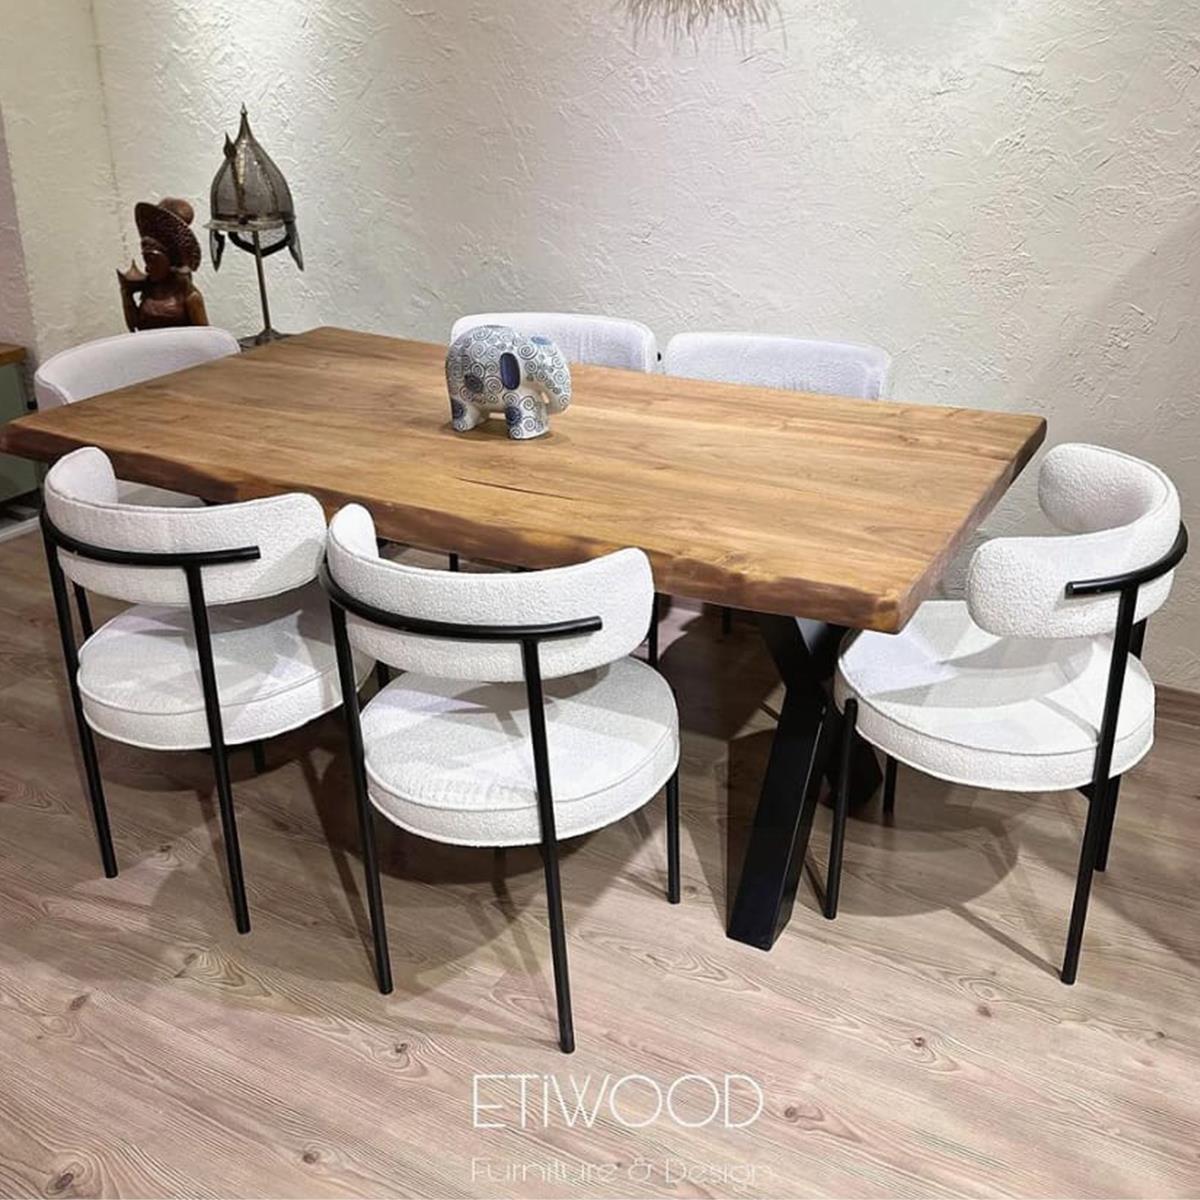 Etiwood Brand Yemek Masası